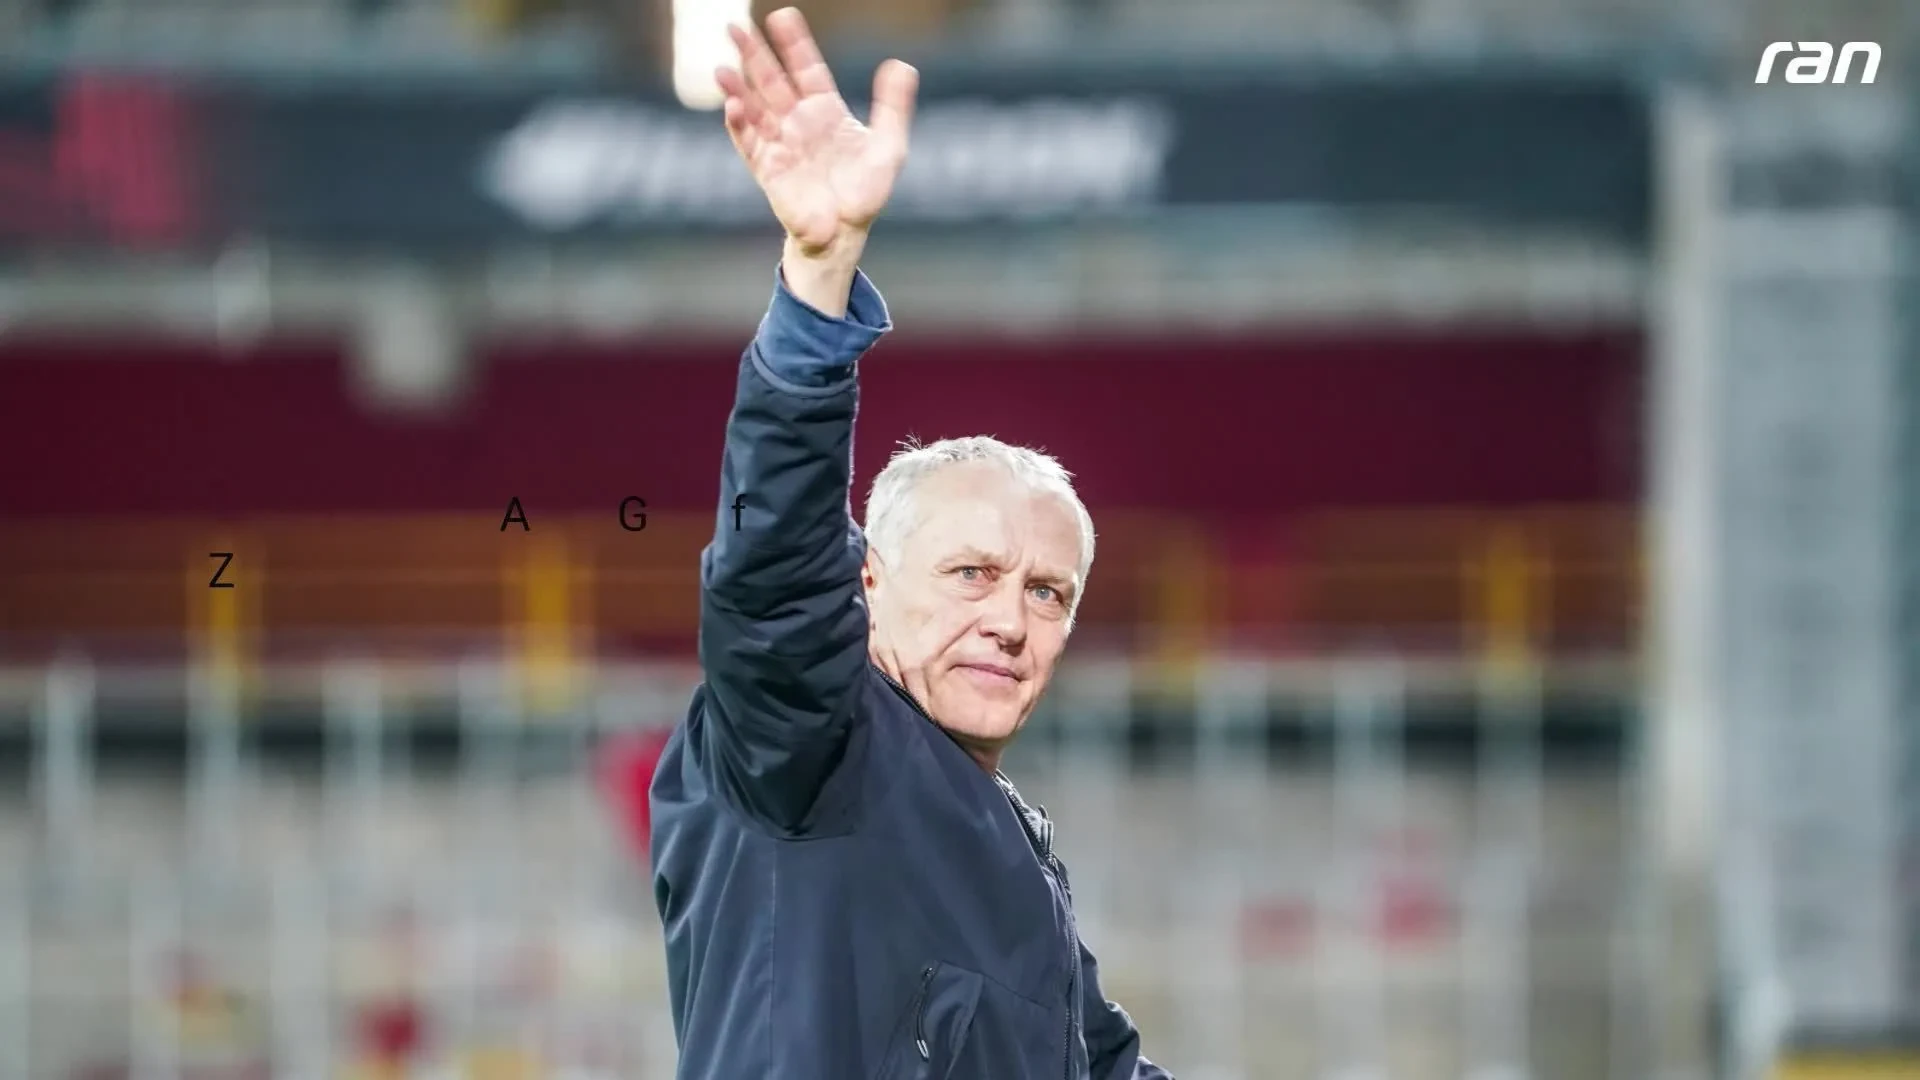 La dimisión de Streich como entrenador: reacciones desde la política y el fútbol